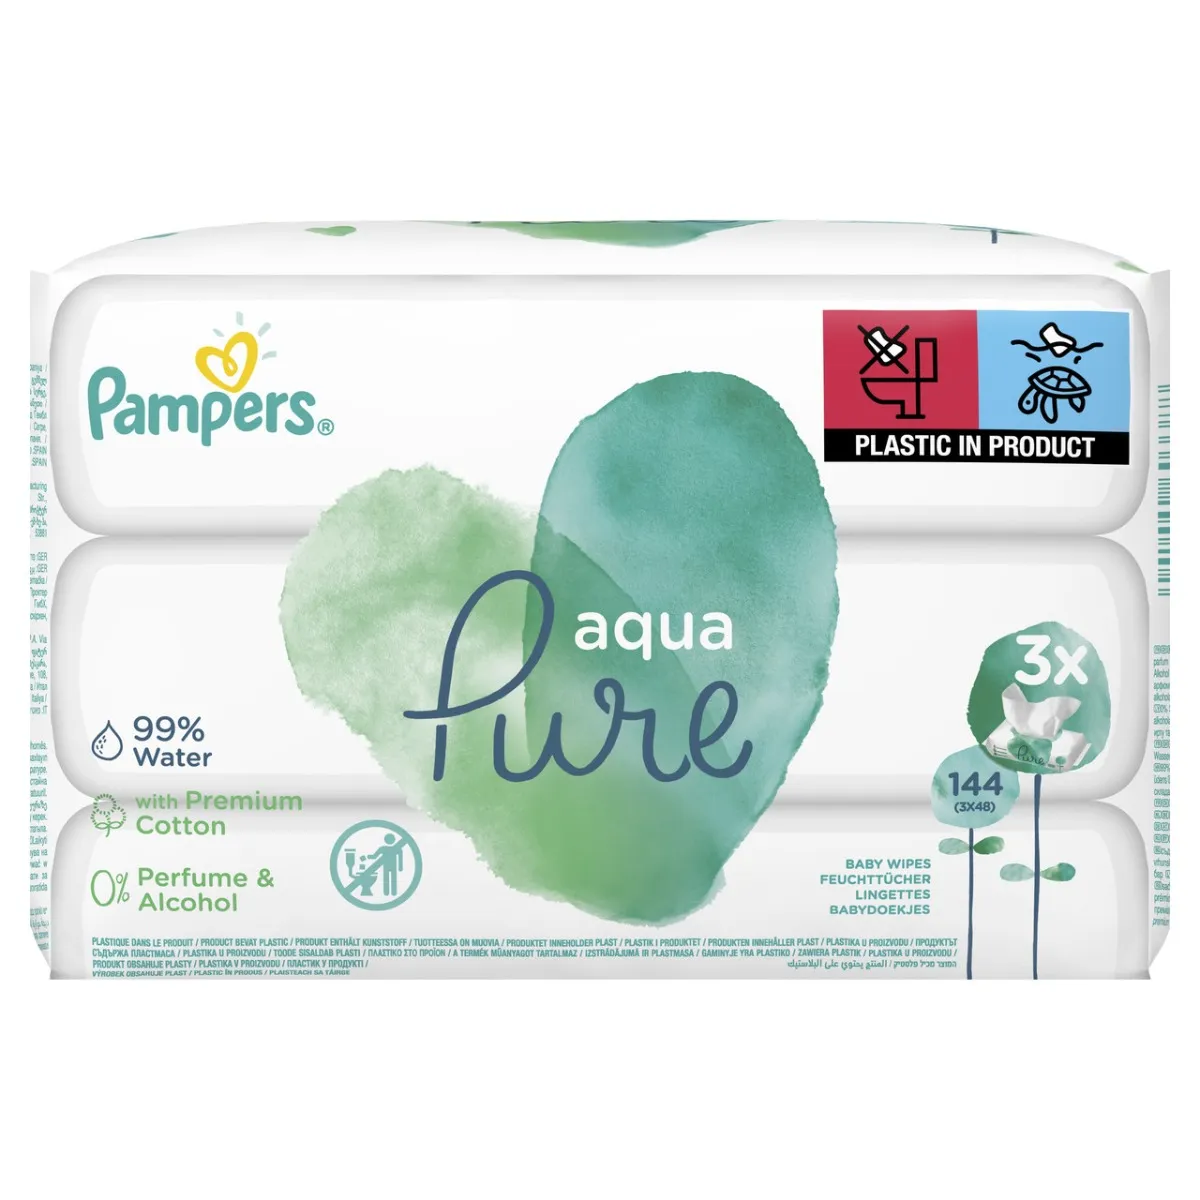 Pampers Aqua Pure, chusteczki nawilżane, 3x48 sztuki 